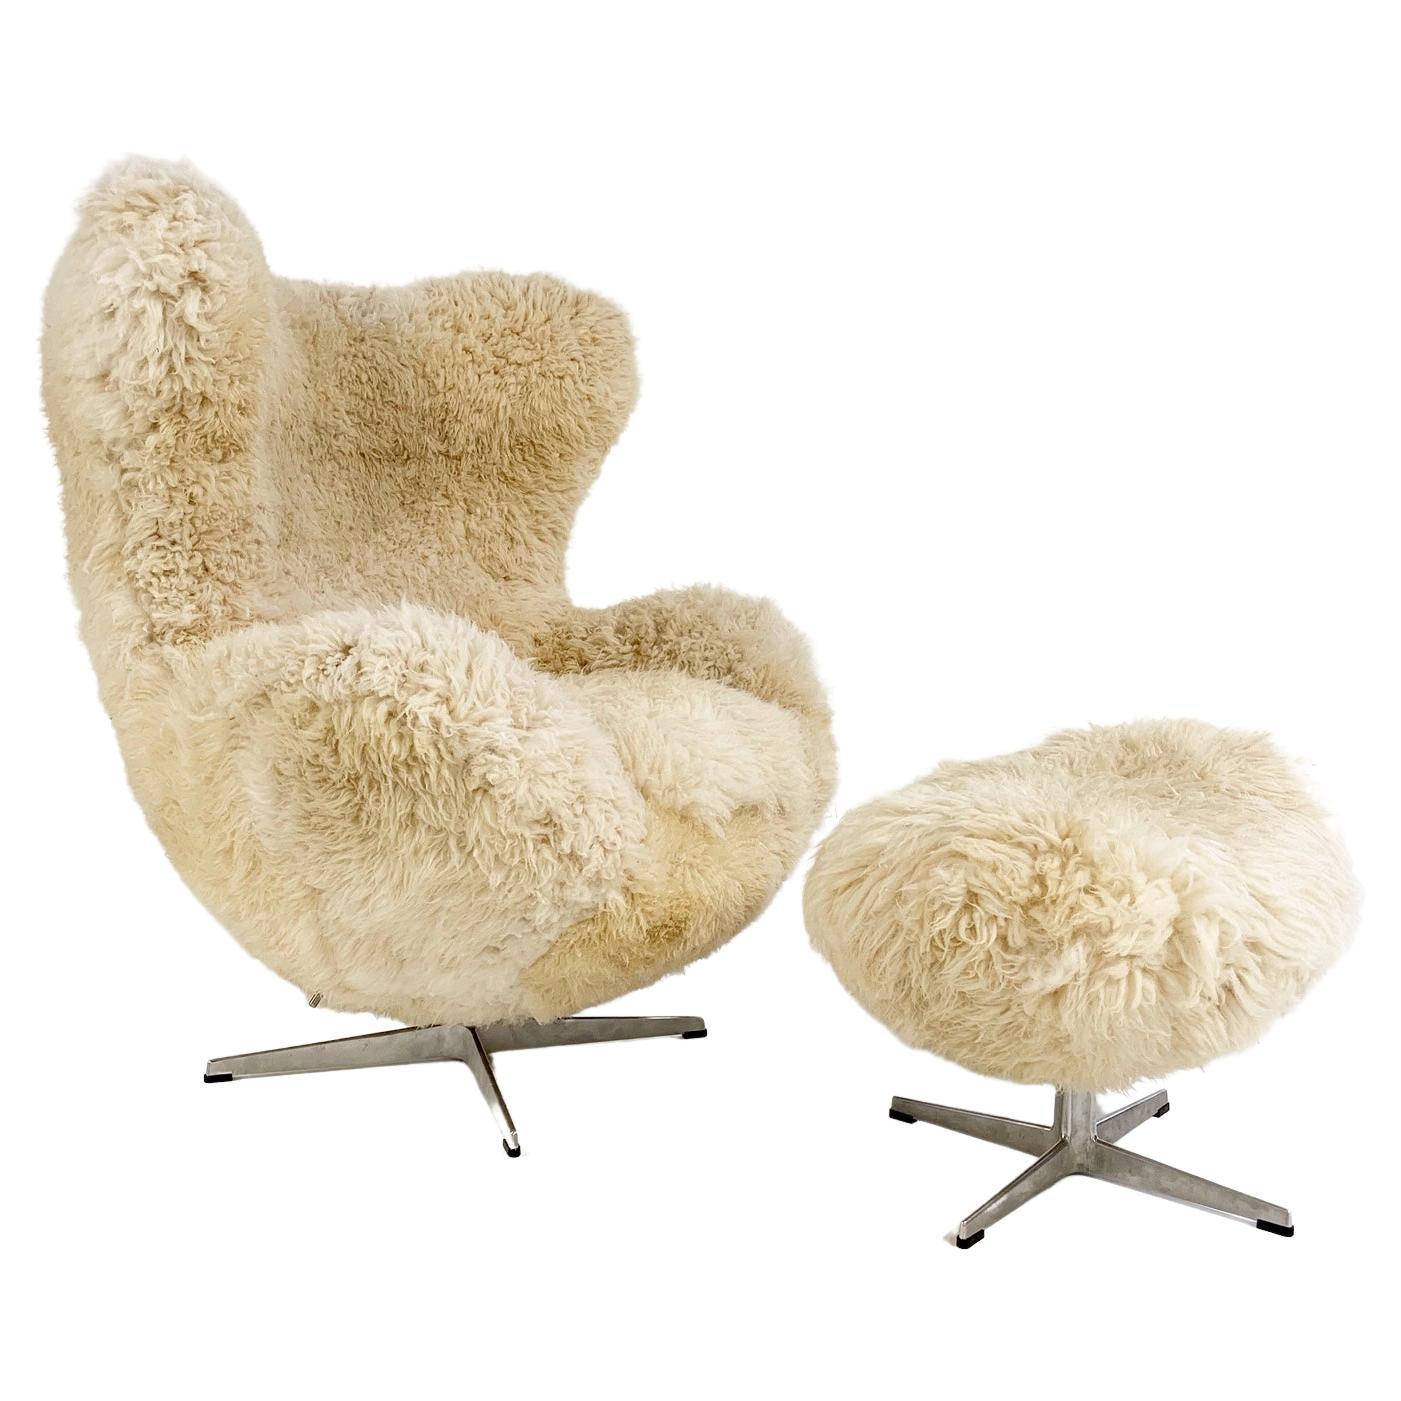 Forsyth Bespoke Arne Jacobsen Egg Chair and Ottoman in California Sheepskin For Sale